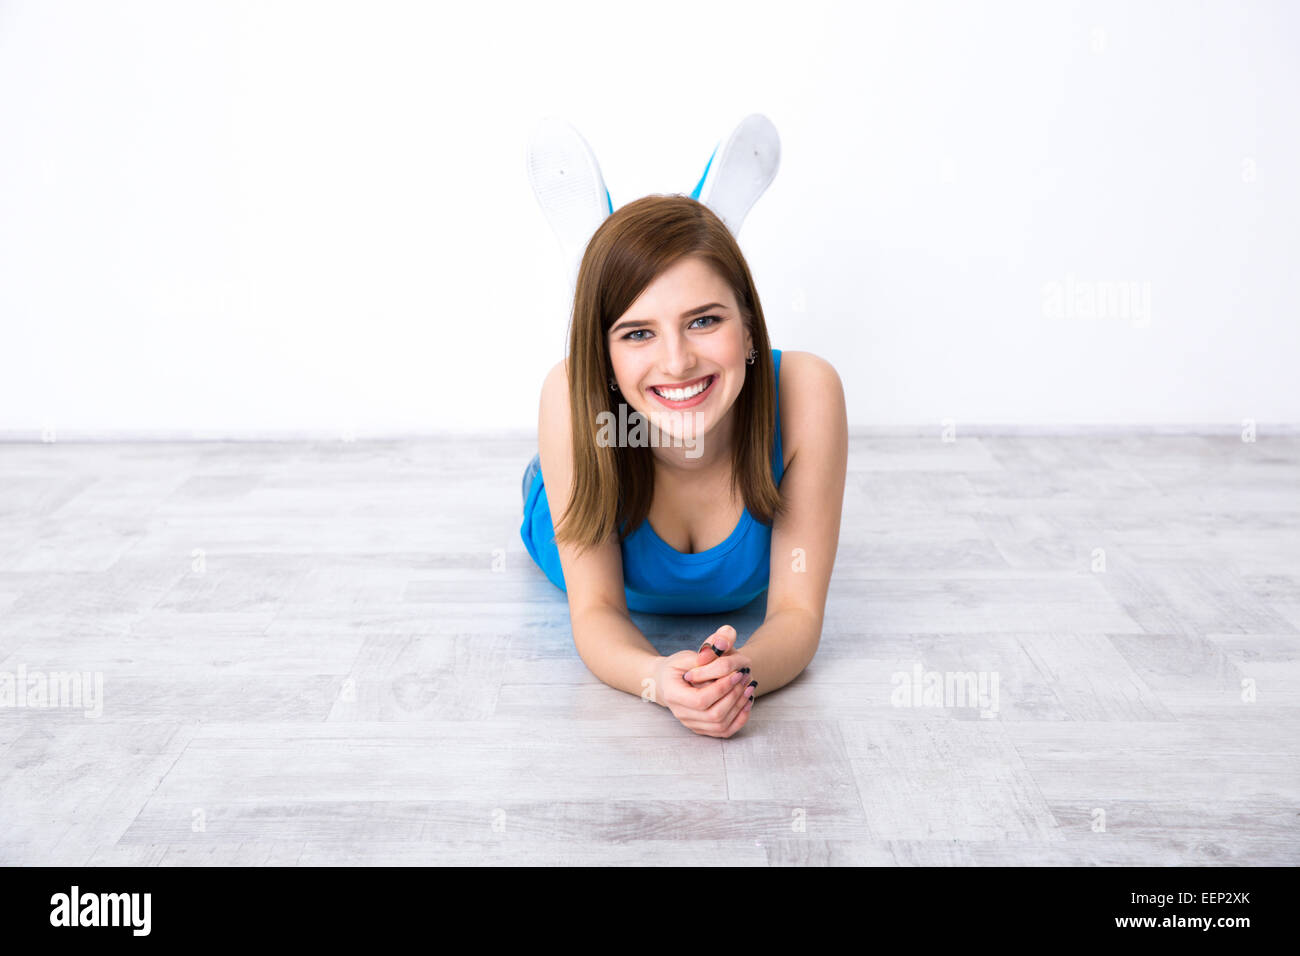 Porträt von attraktiven glücklich Frau auf dem Boden liegend Stockfoto